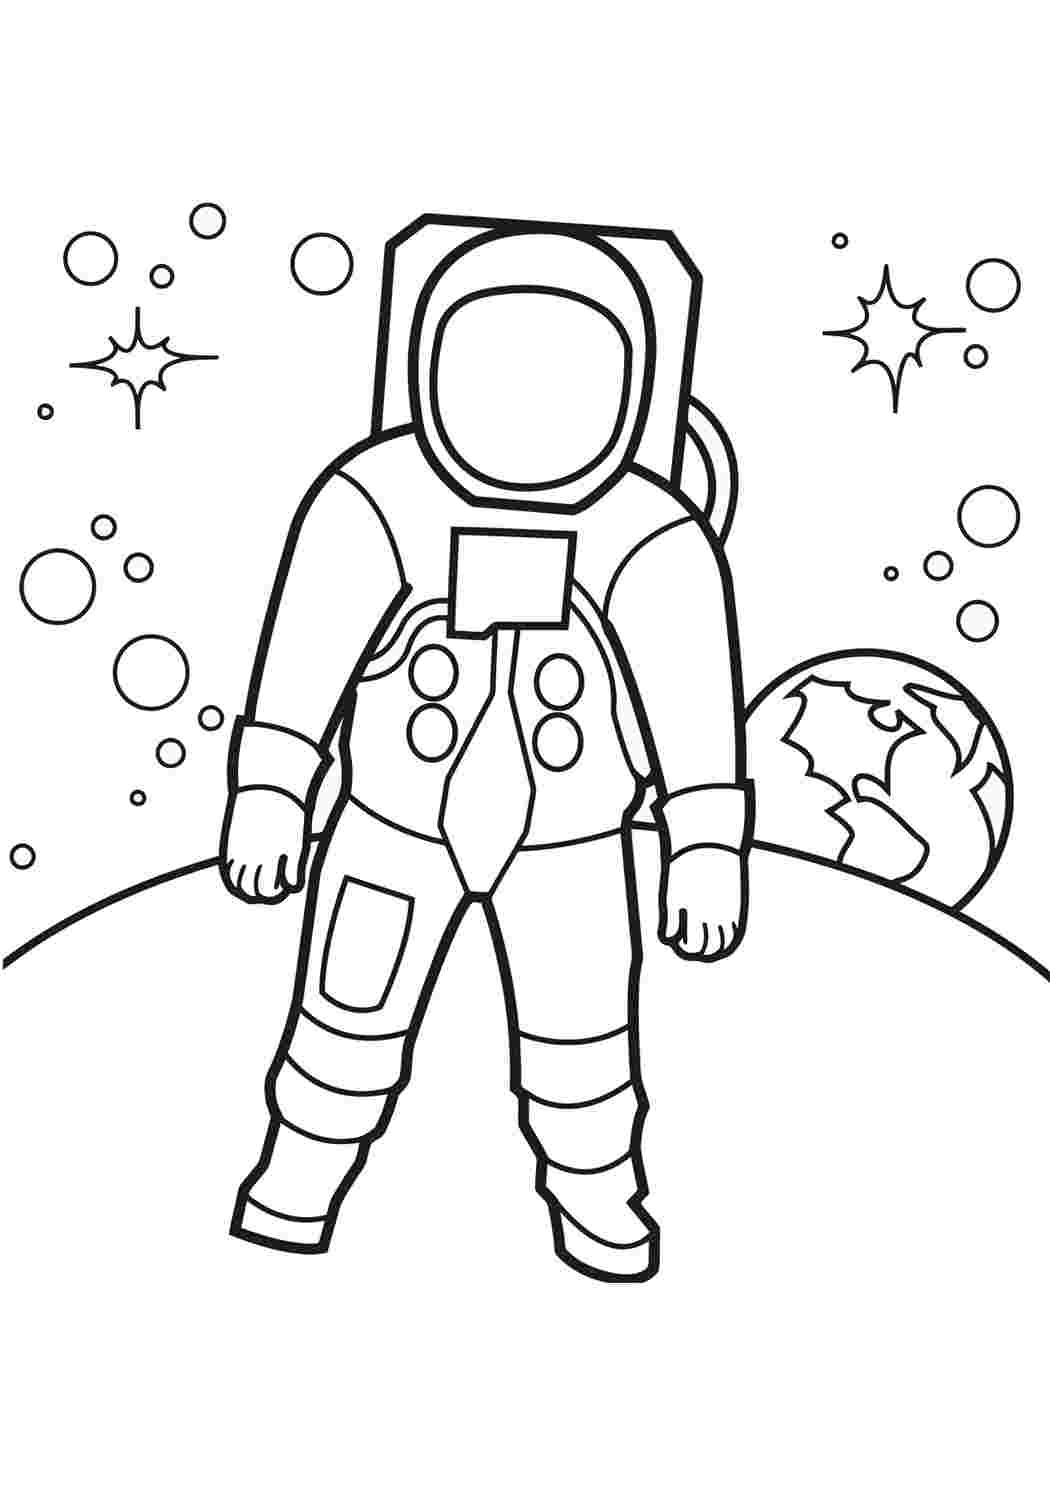 Как нарисовать космос поэтапно. Космонавт раскраска для детей. Раскраска для малышей. Космос. Космонавтика раскраски для детей. Раскраска. В космосе.